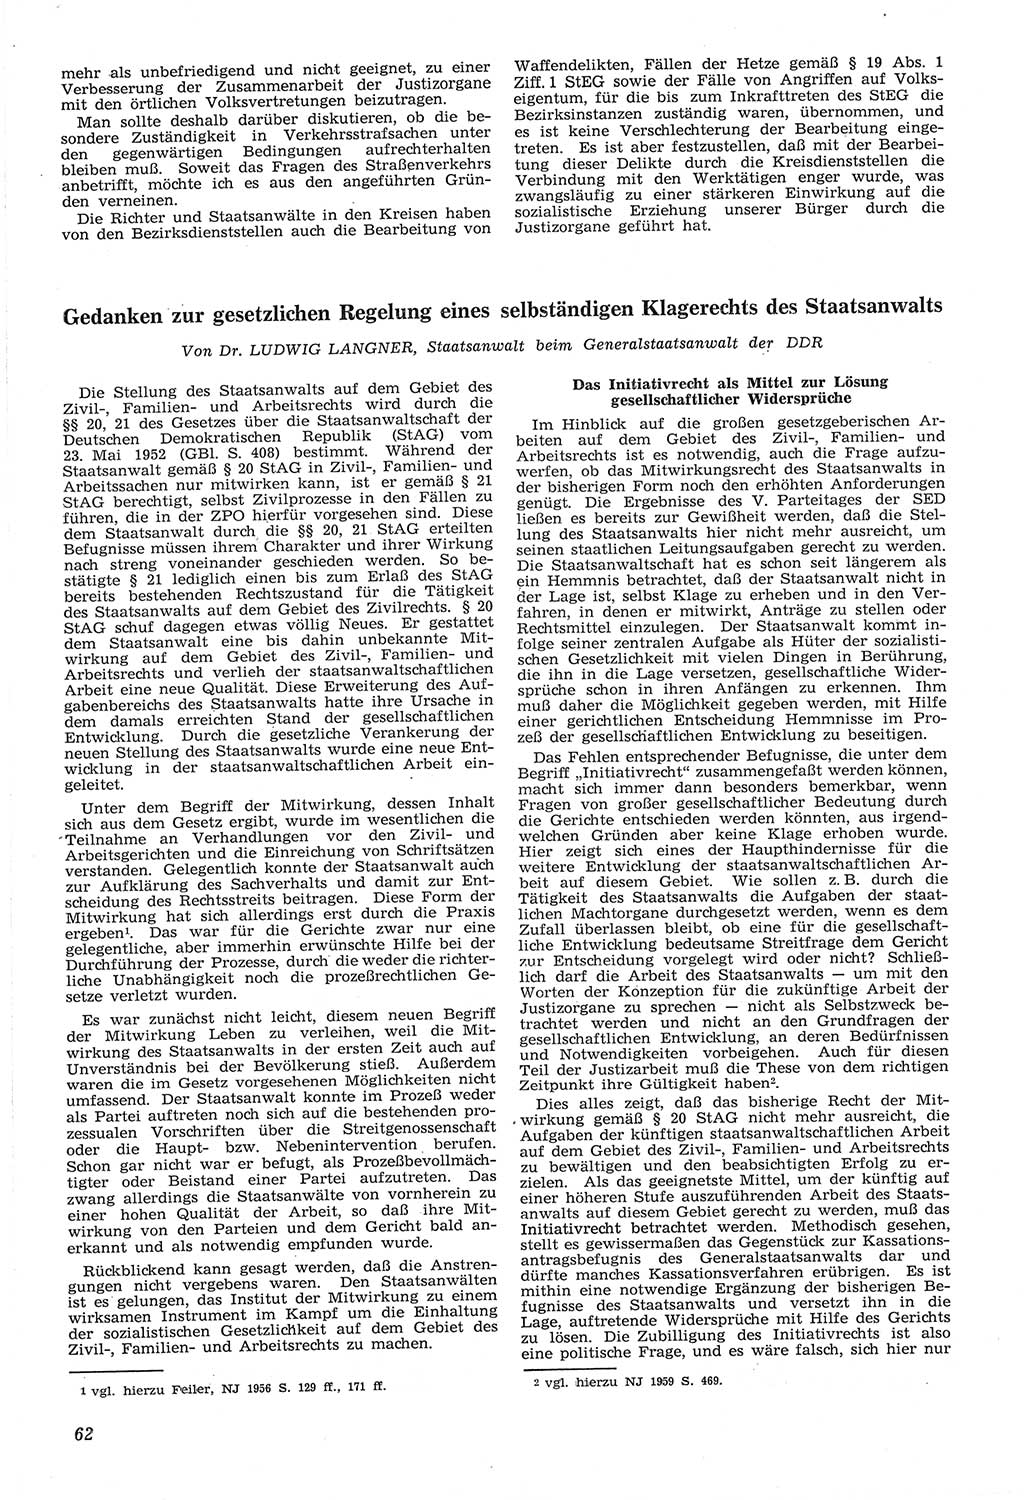 Neue Justiz (NJ), Zeitschrift für Recht und Rechtswissenschaft [Deutsche Demokratische Republik (DDR)], 14. Jahrgang 1960, Seite 62 (NJ DDR 1960, S. 62)